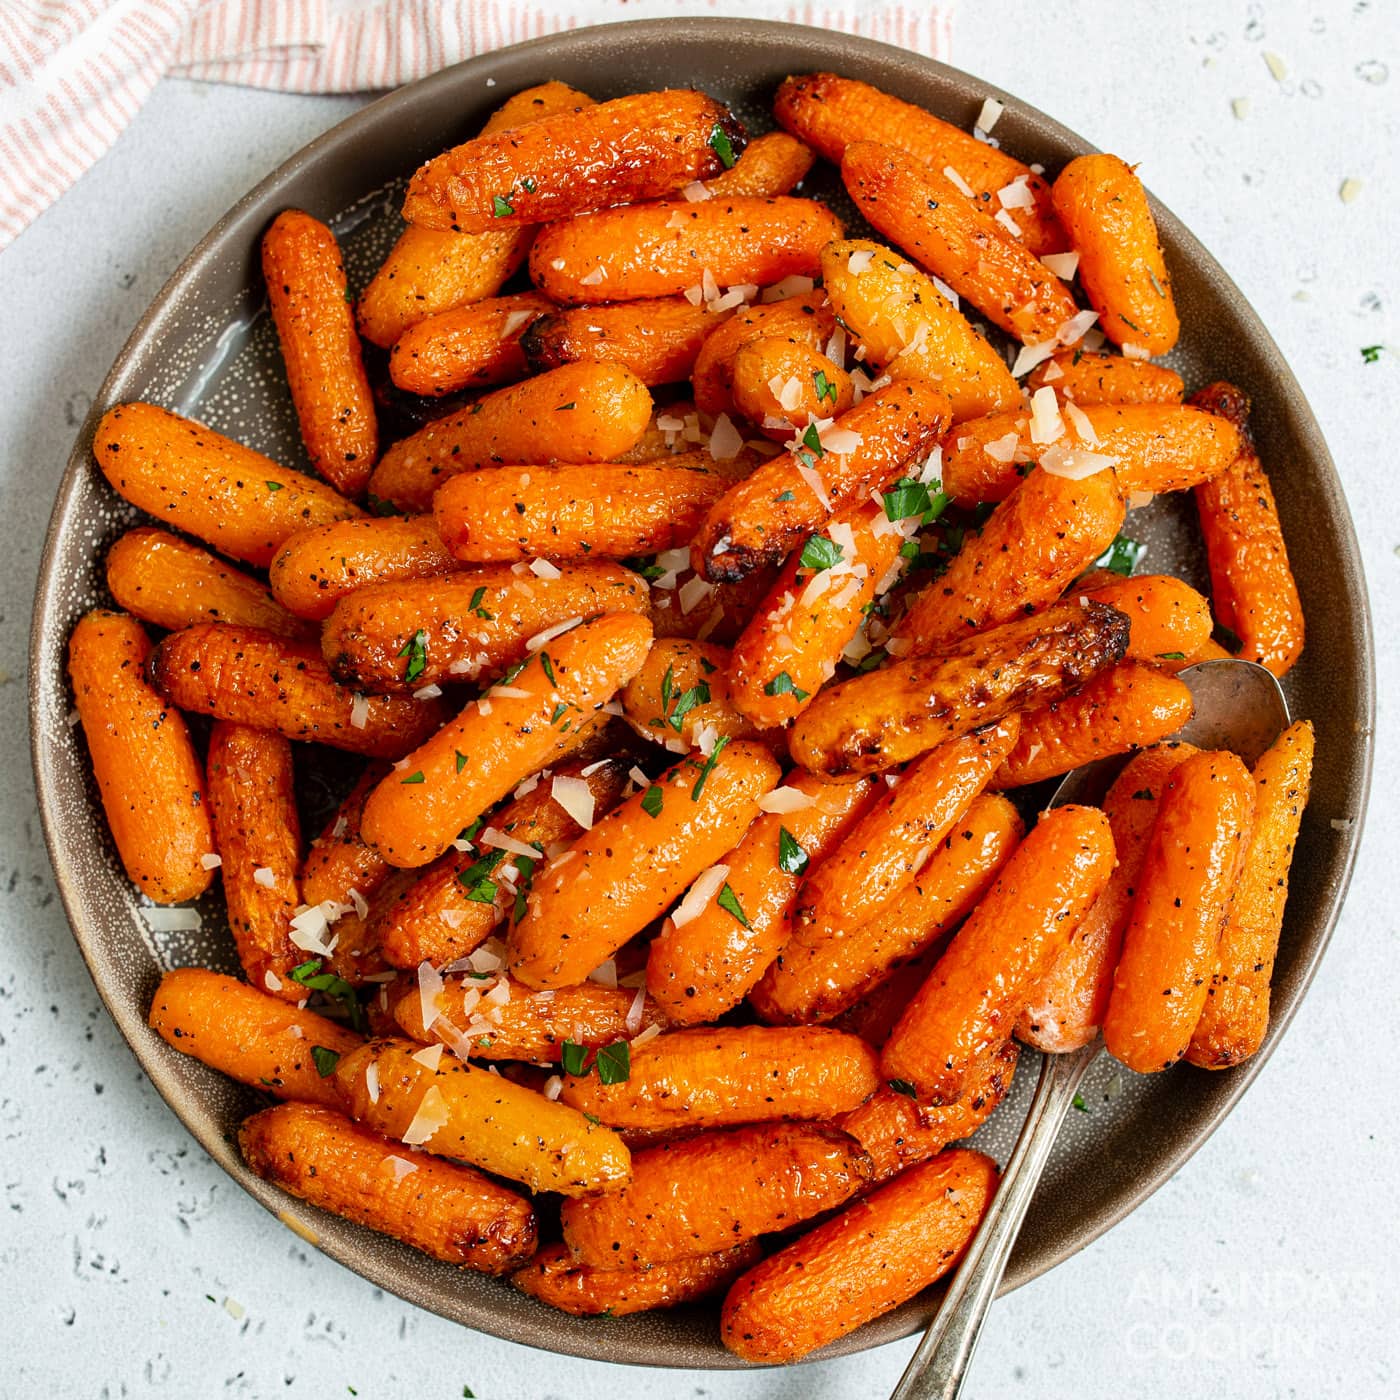 Air Fryer Carrots - Amanda's Cookin' - Air Fryer Recipes